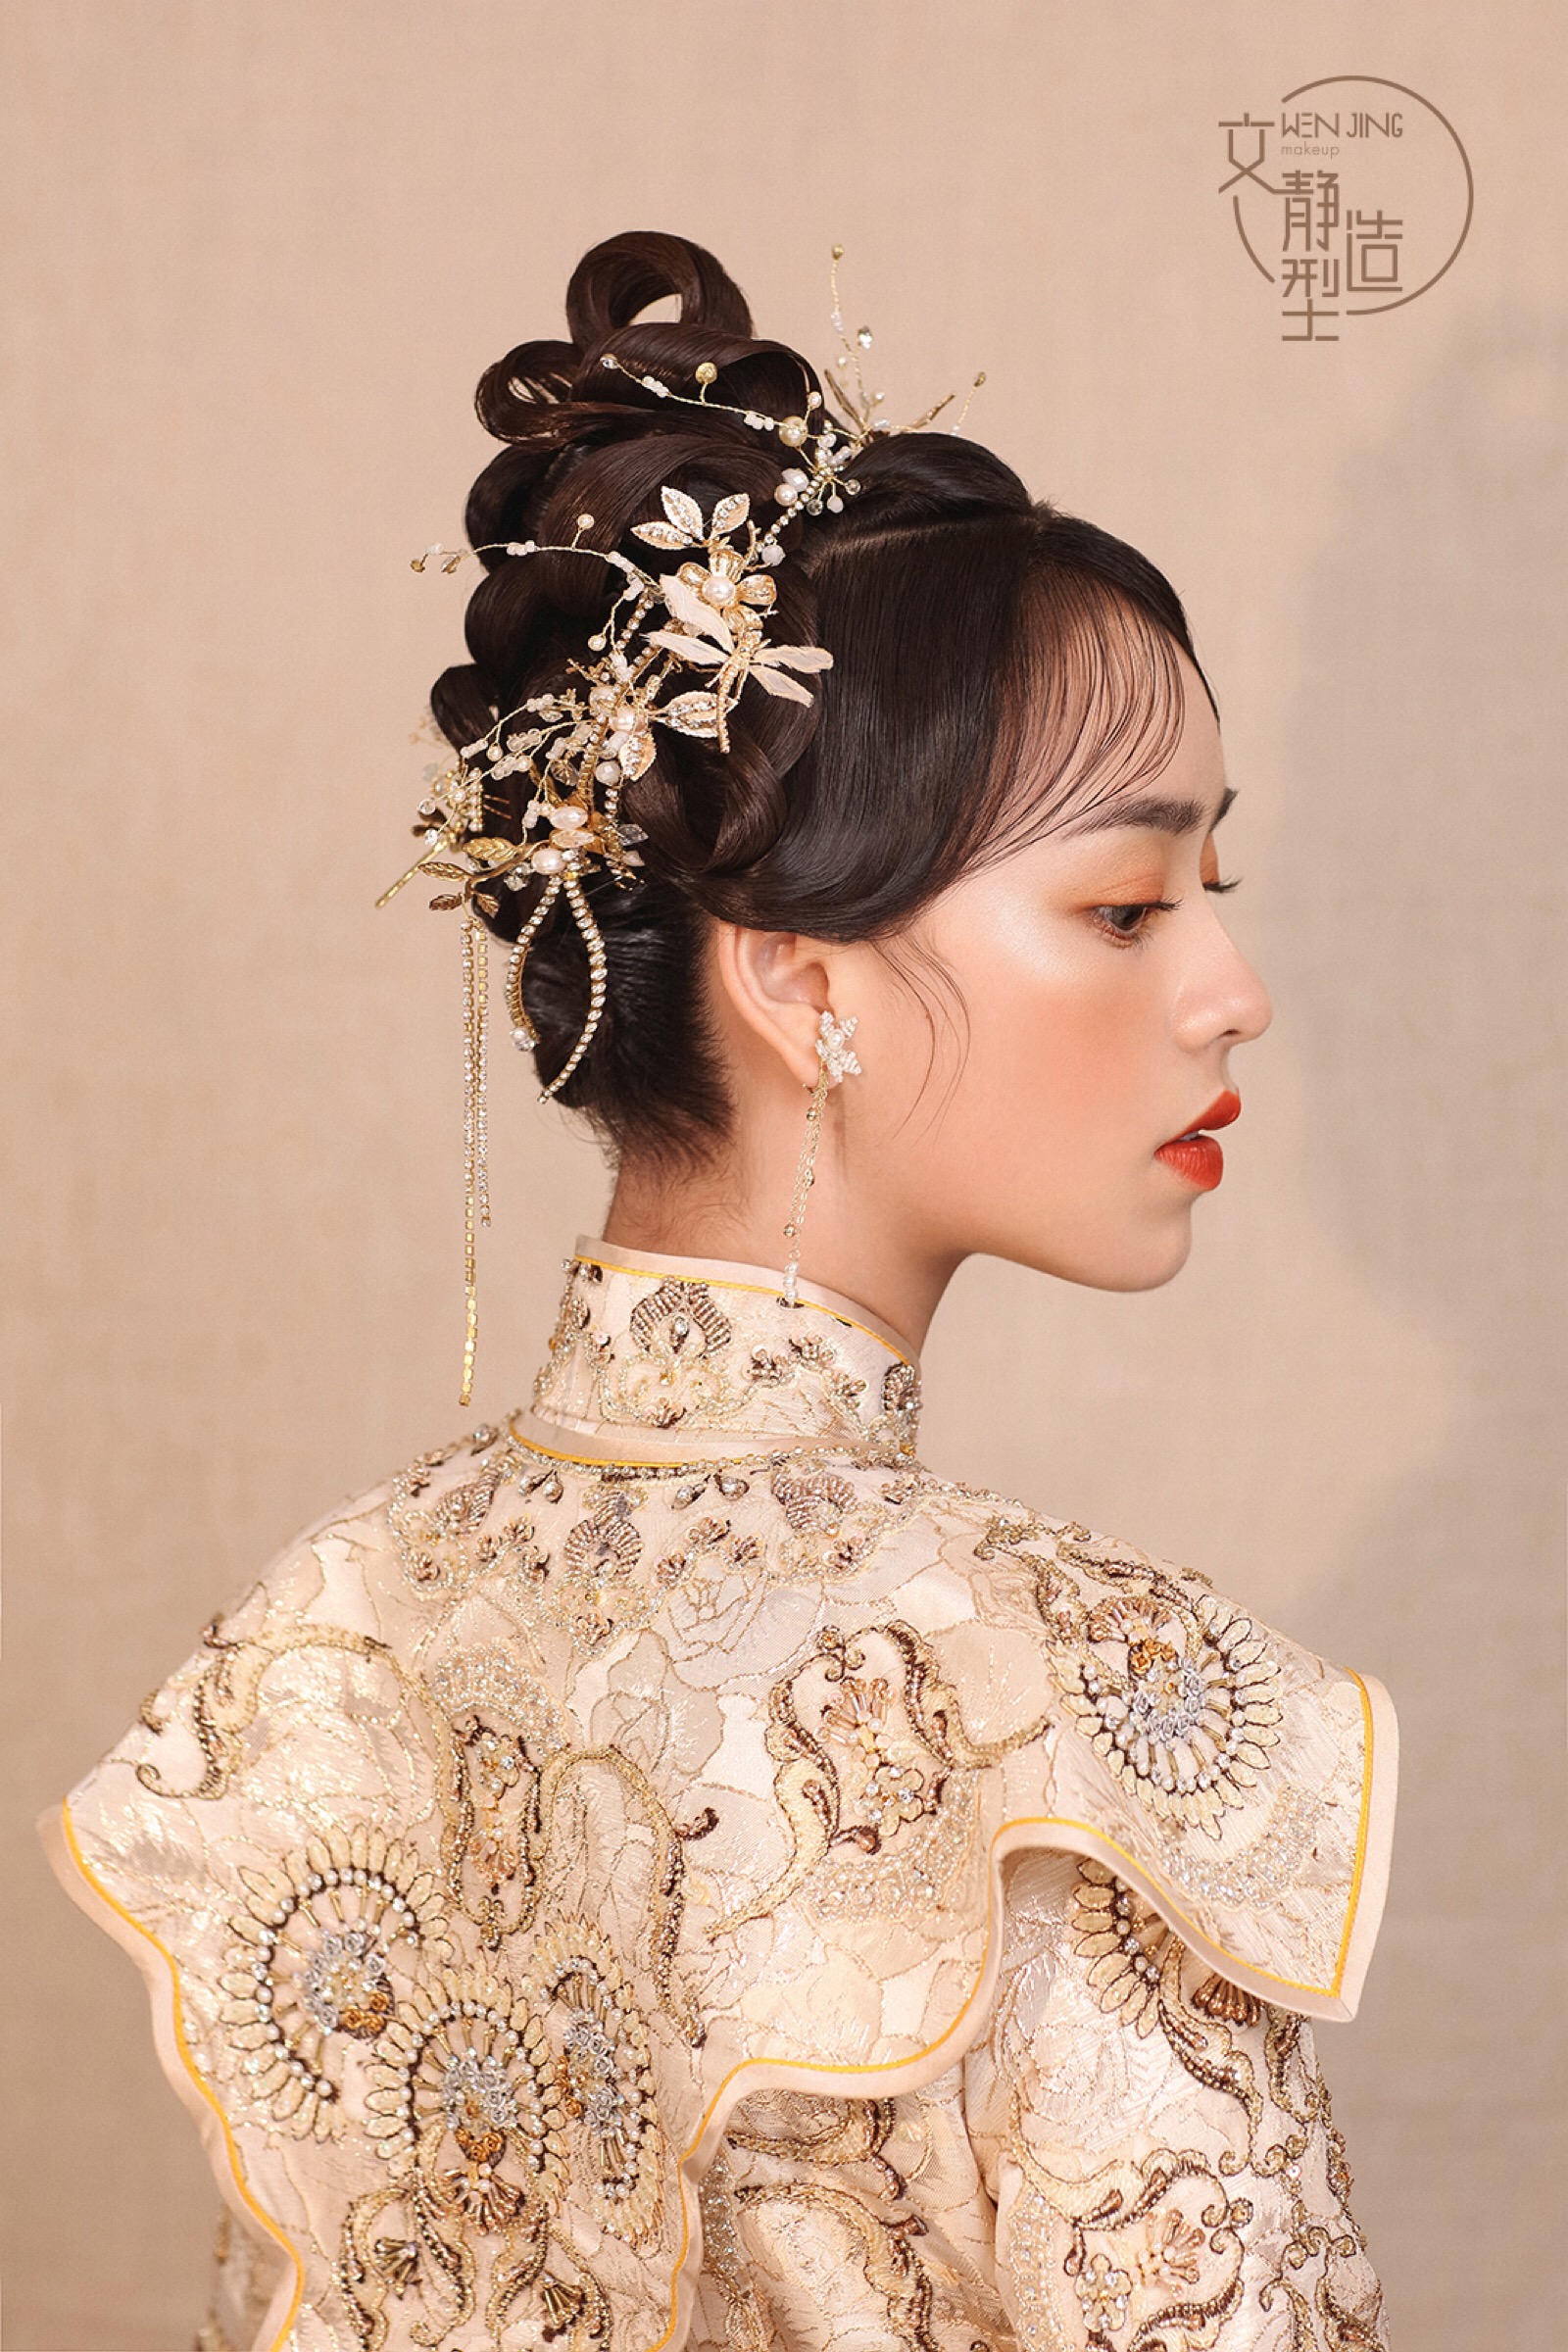 中式卷筒造型 新娘造型 新娘发型 新娘化妆 清浅中式 秀禾服造型